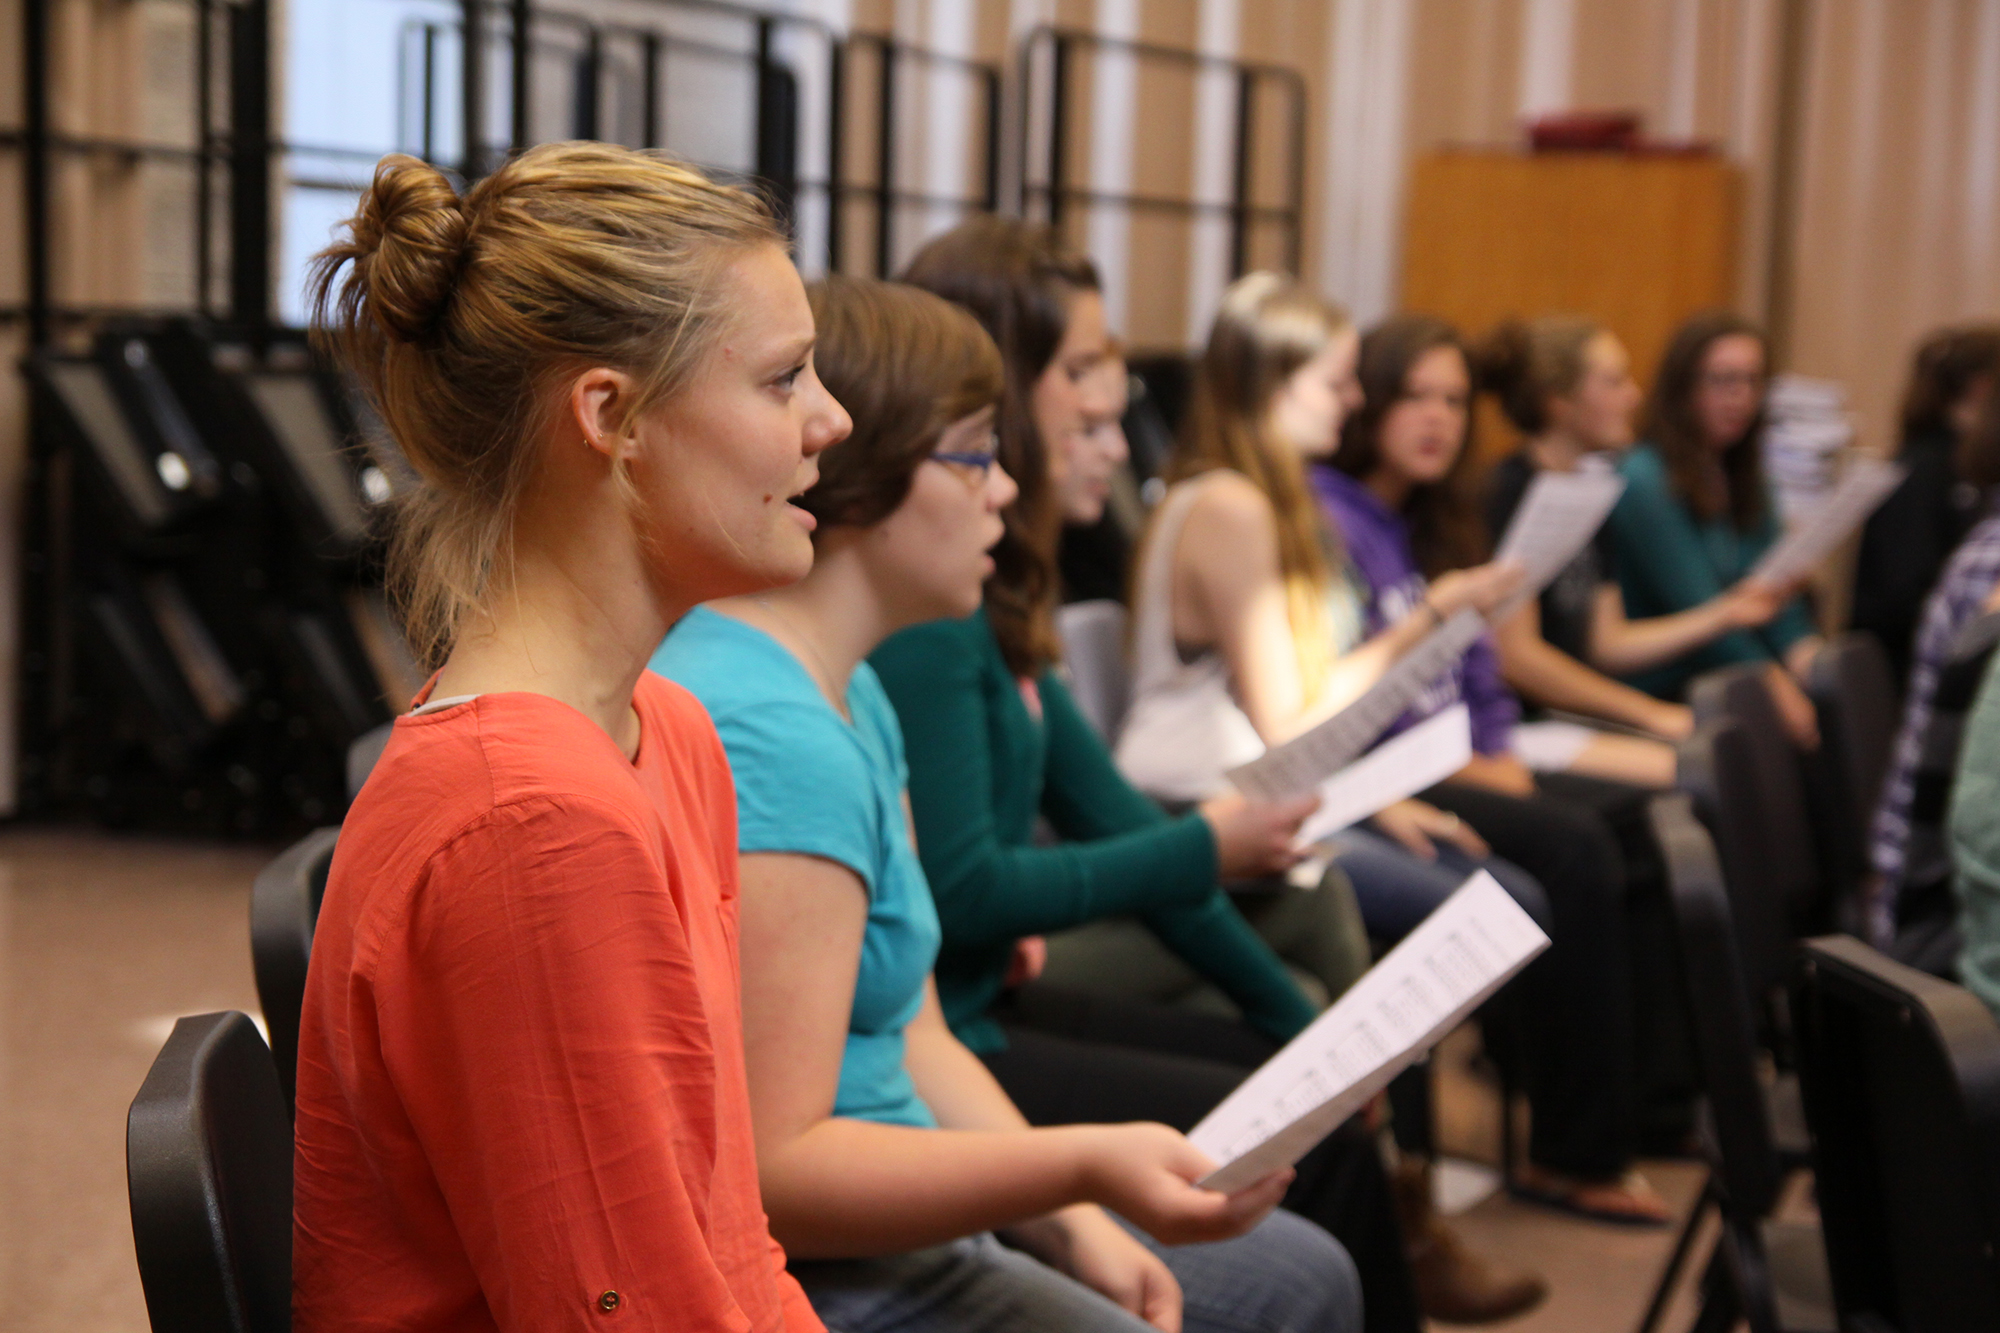 People sing during choir practice